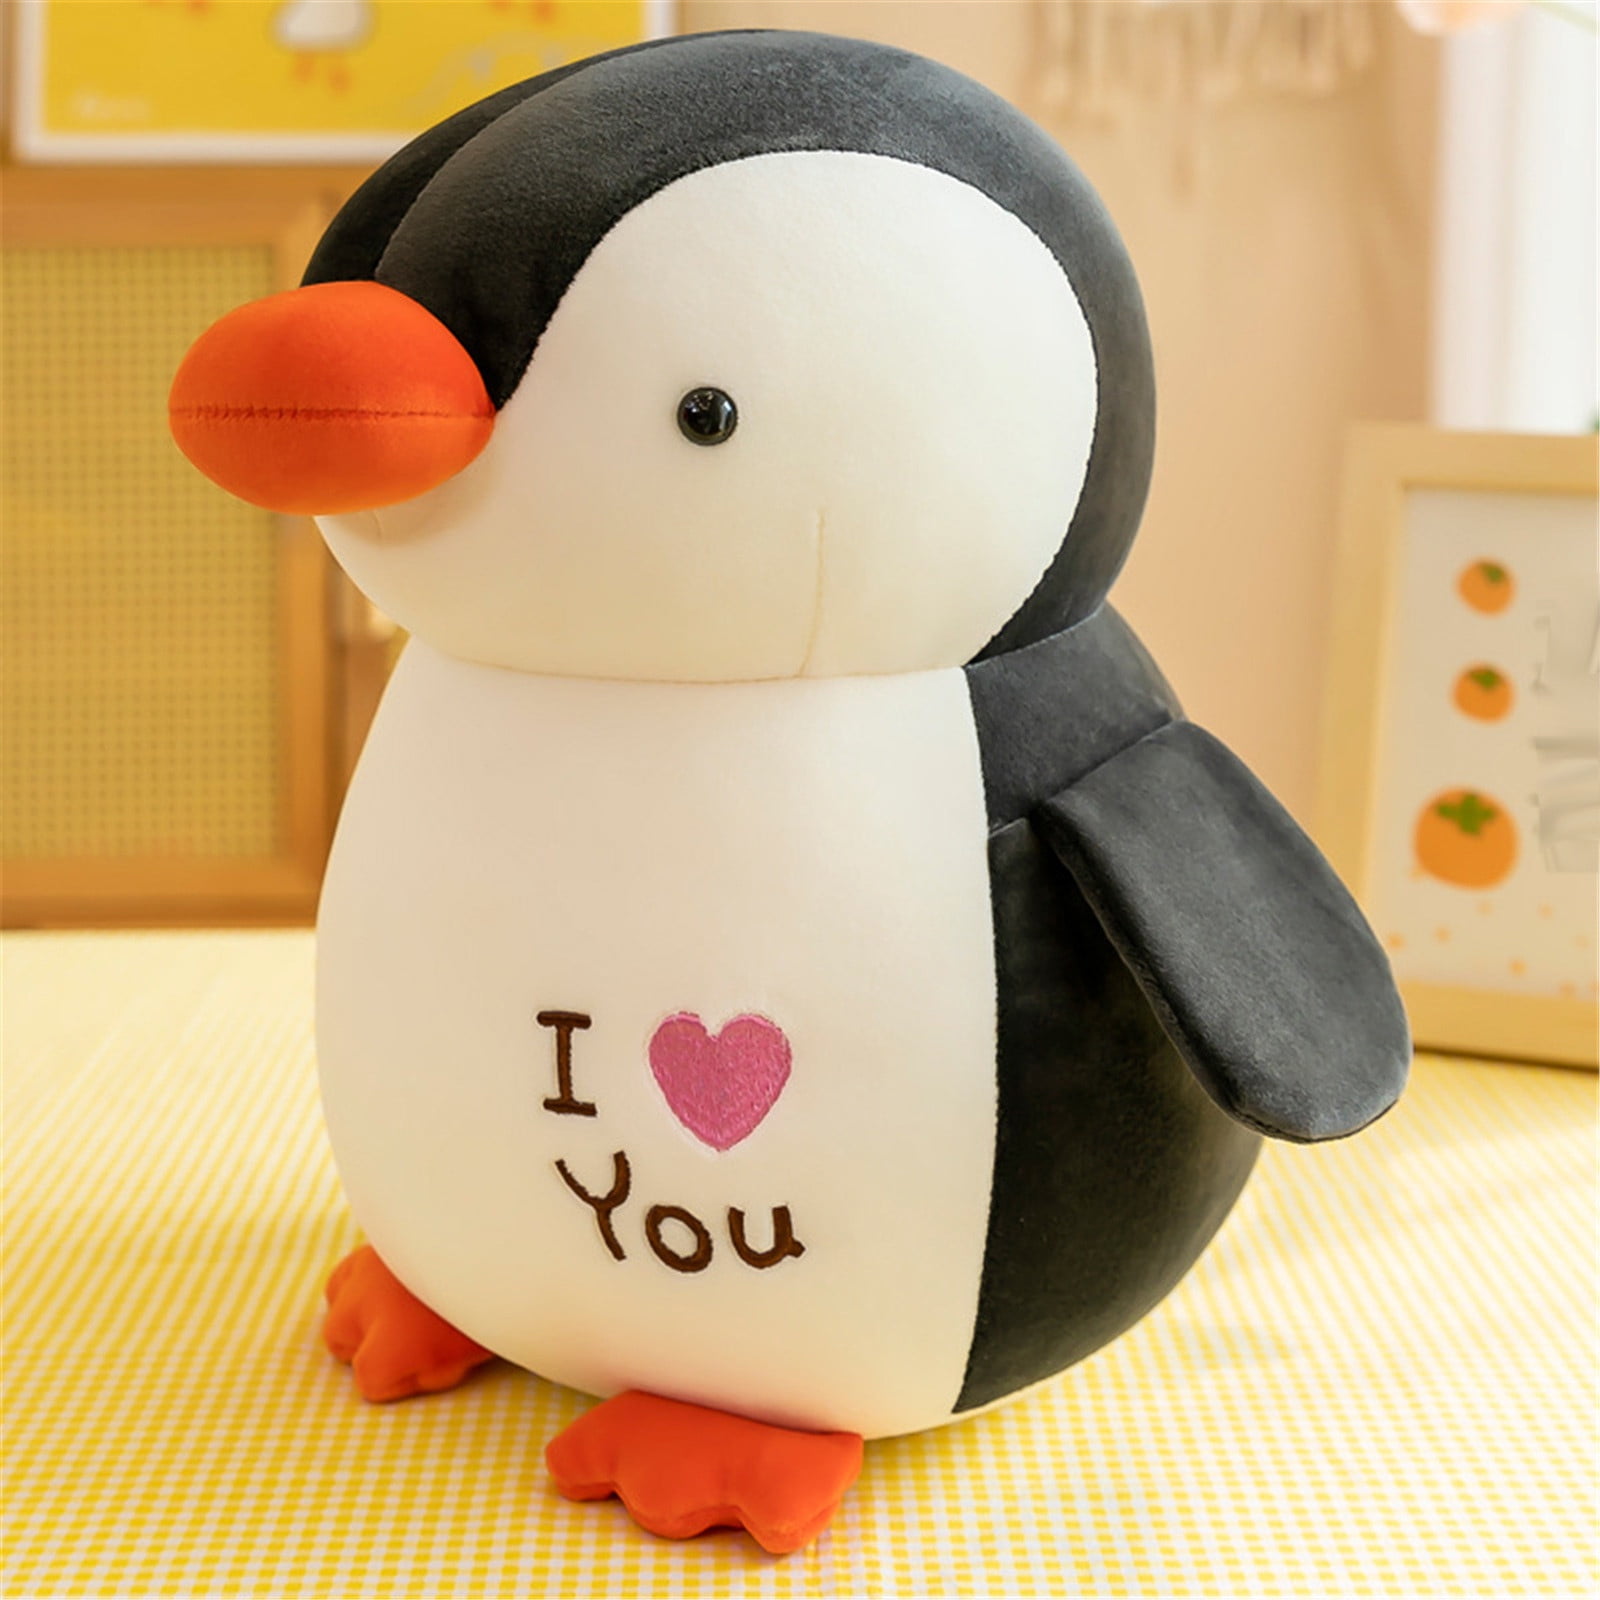 10 Penguins Cute Little Penguins w/ Stocking Caps Plastic Shank Buttons 